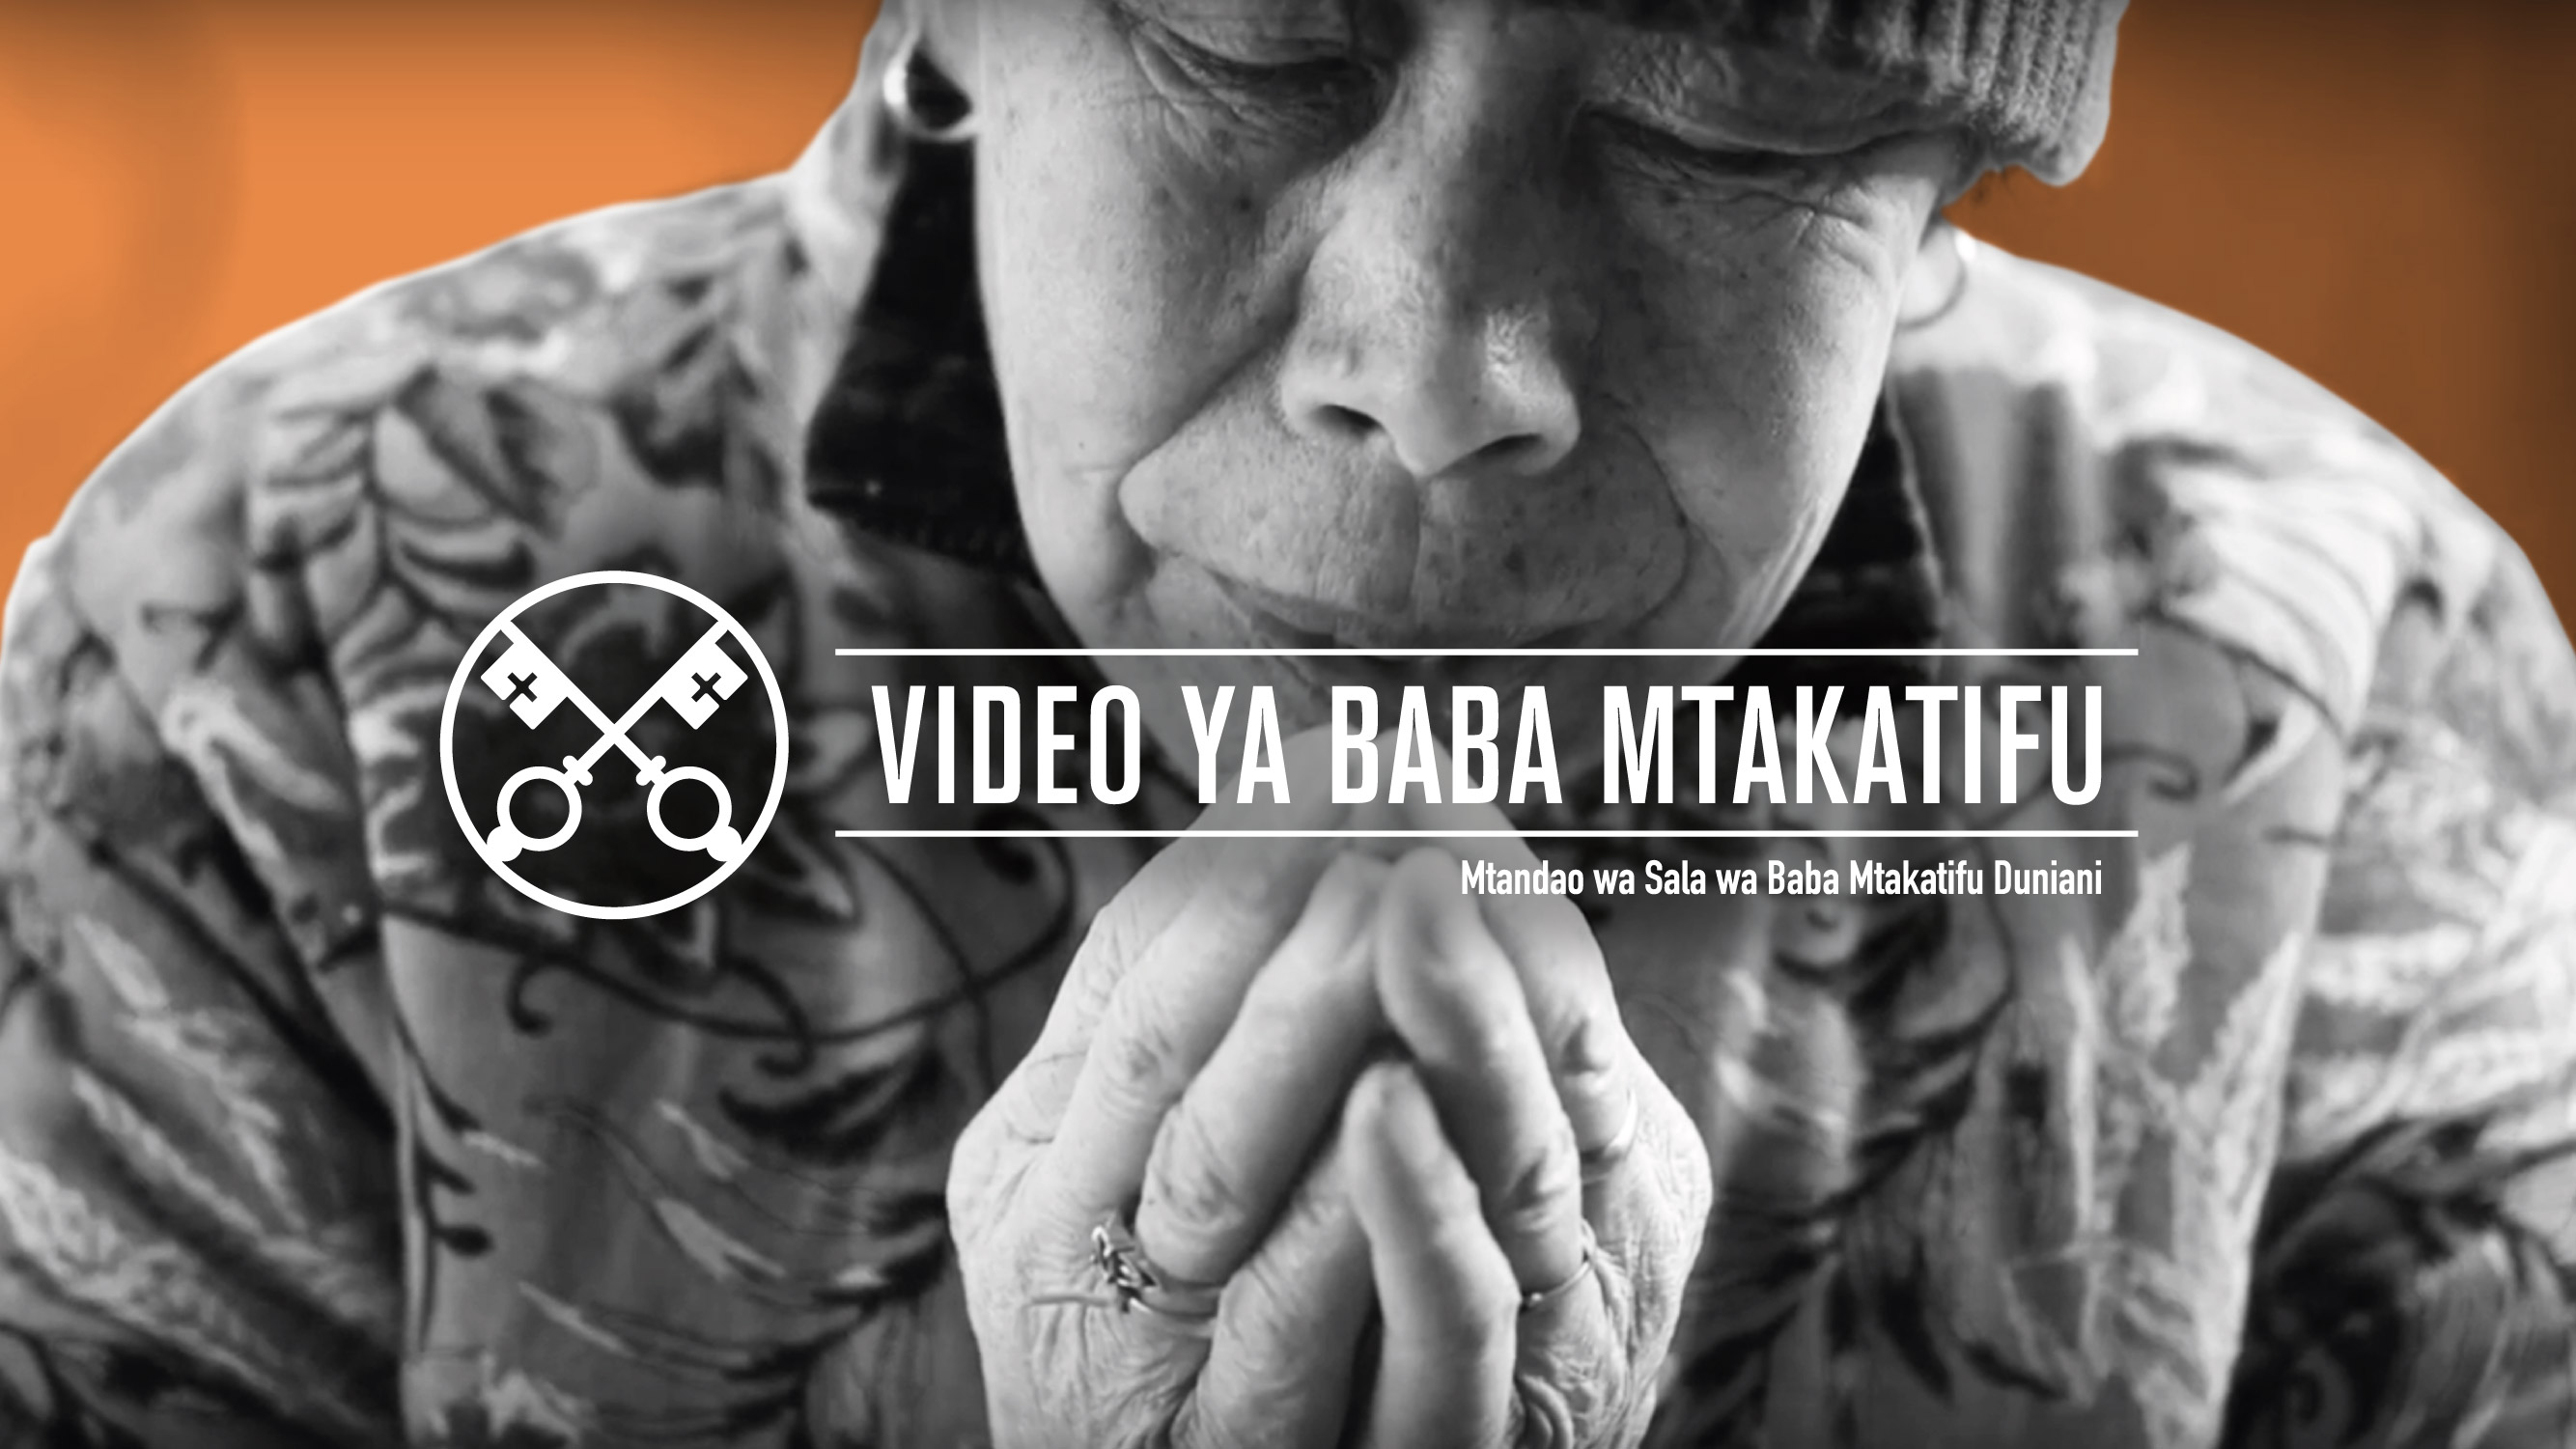 Official Image - TPV 3 2020 SW - Video ya Baba Mtakatifu - Wakatoliki Nchini China